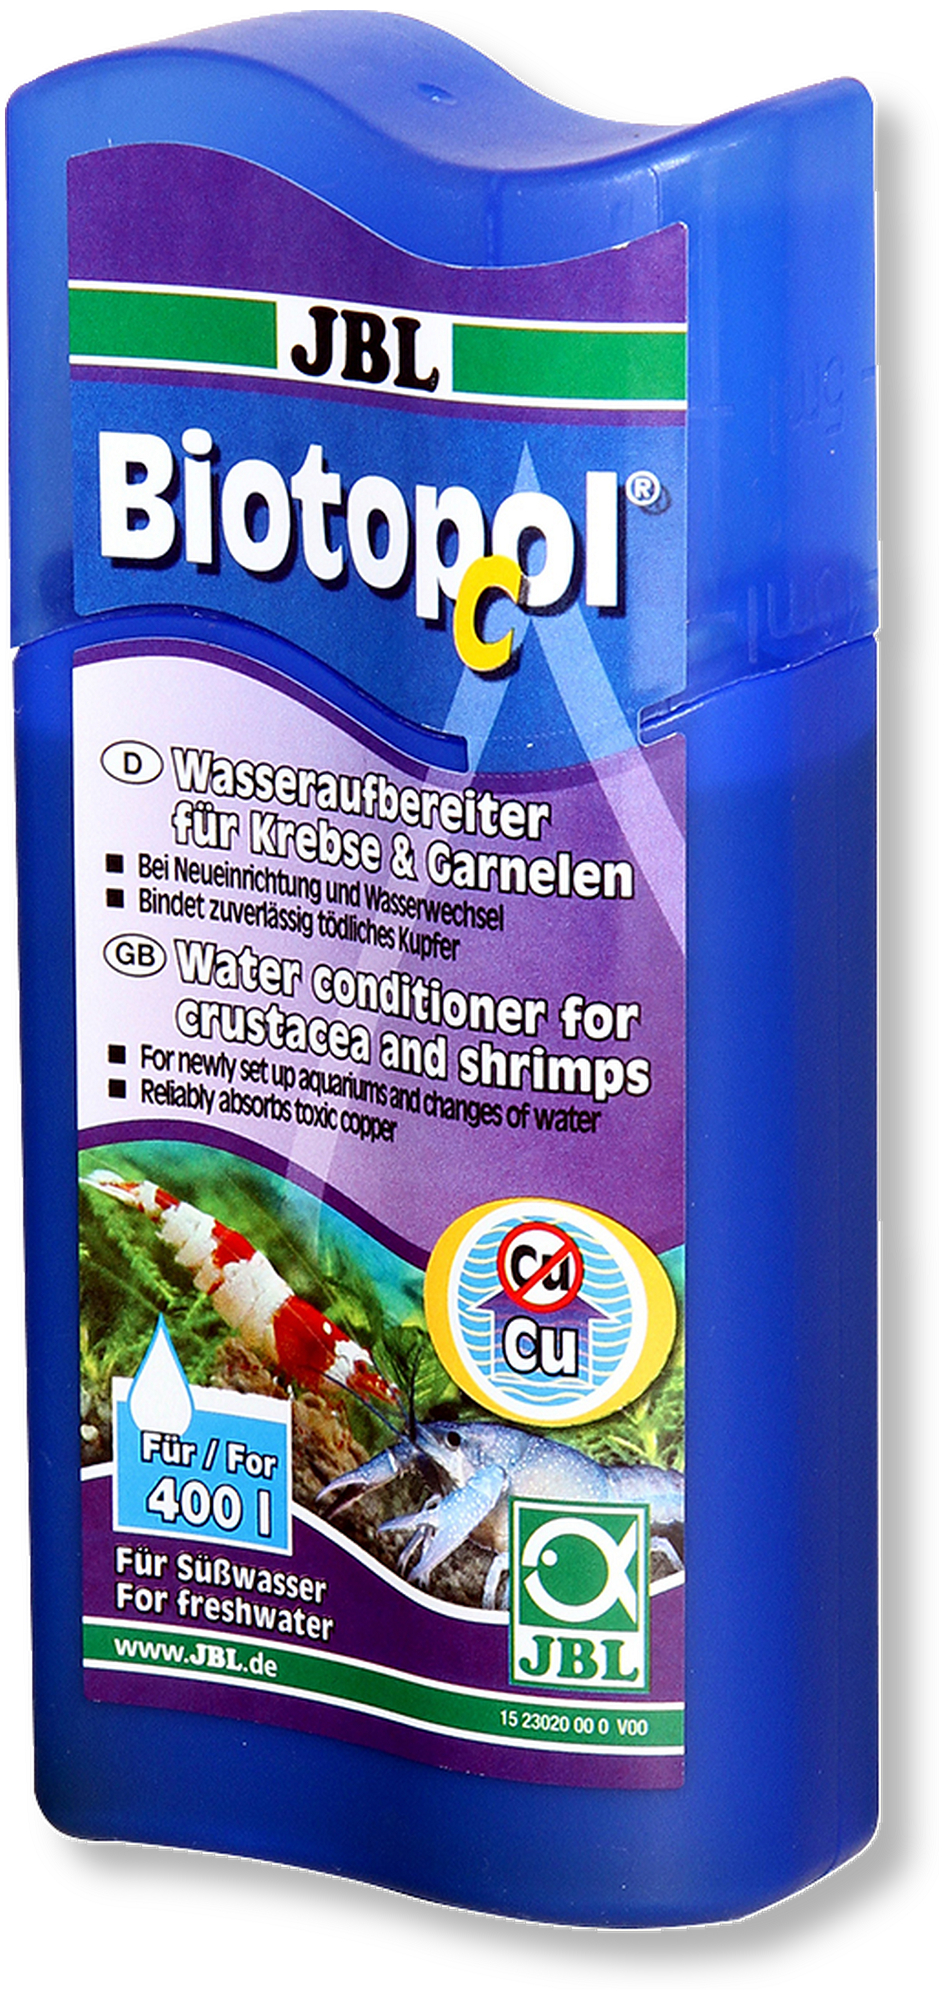 Biotopol C - condicionador de água doce para crustáceos